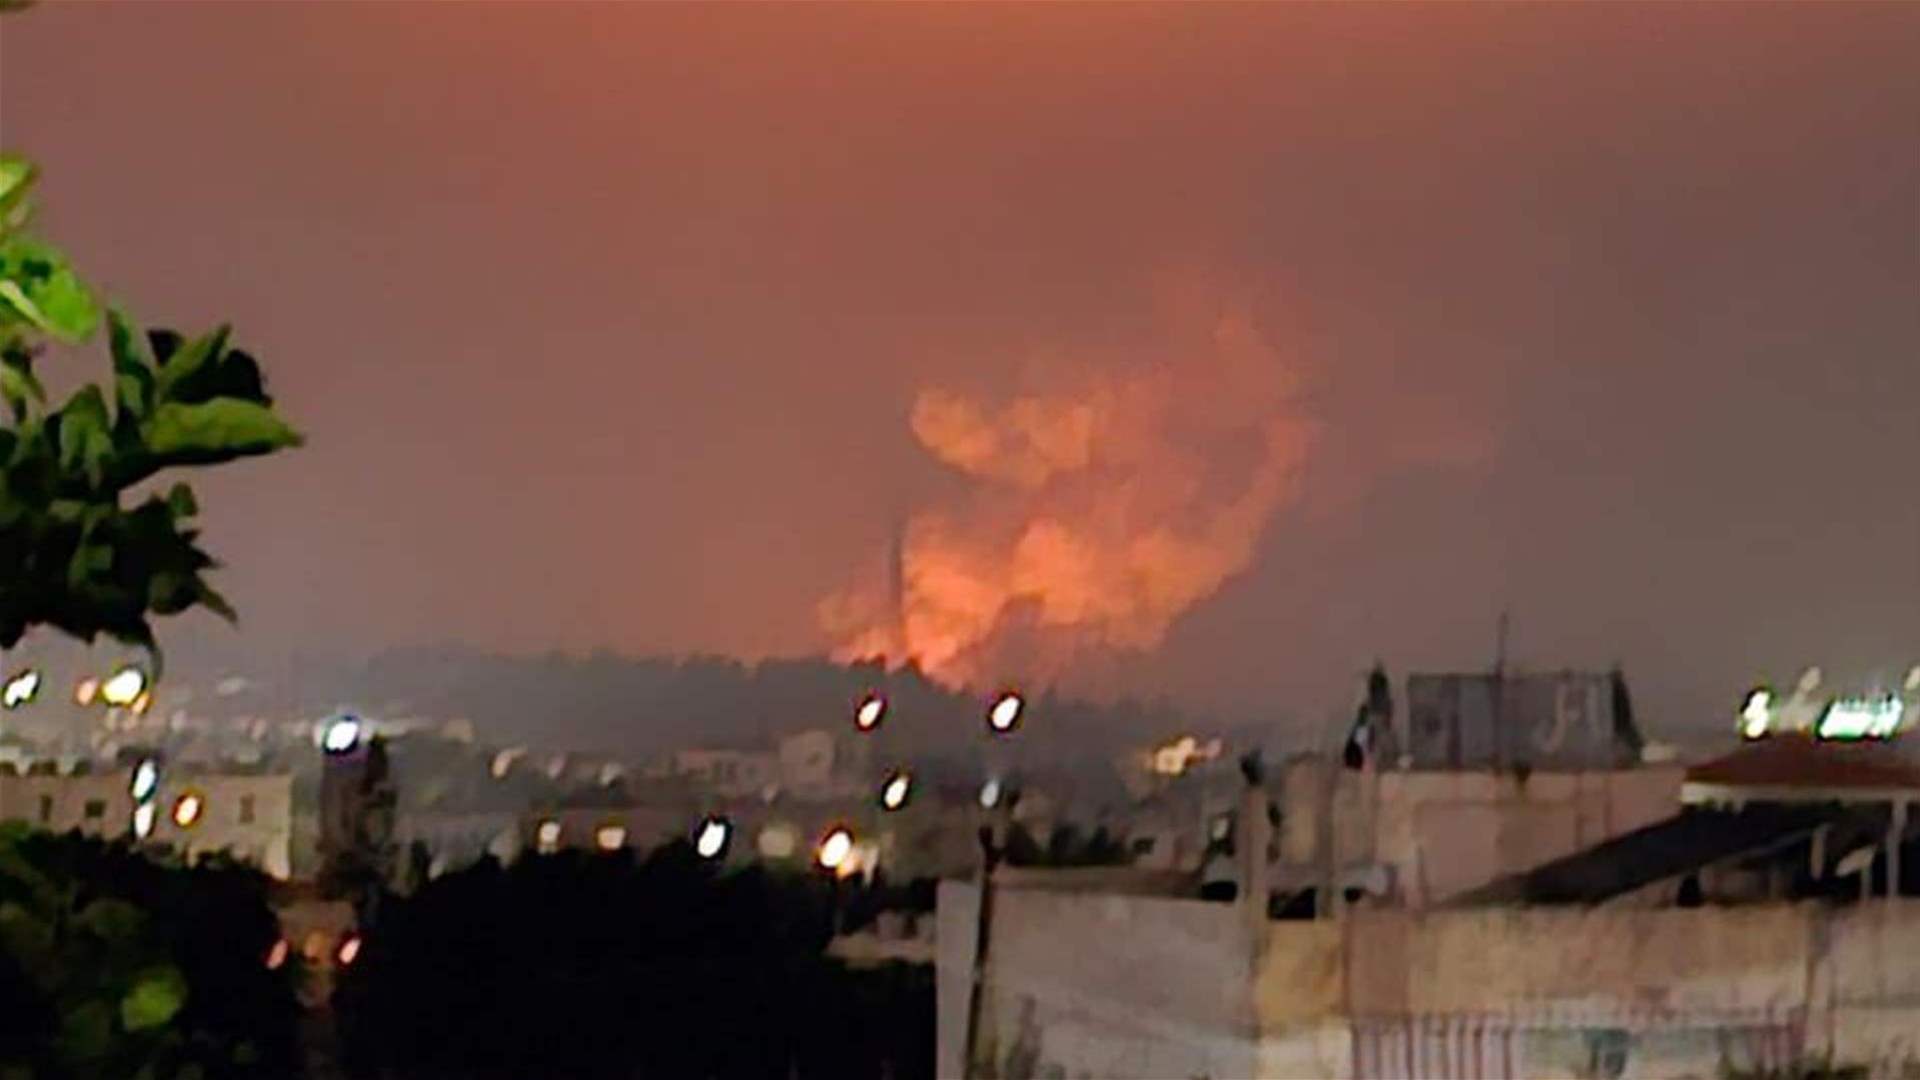 غارة إسرائيلية استهدفت بلدة عدلون - الزهراني جنوبي صيدا وأصوات انفجارات متتالية تسمع في أرجاء المنطقة (فيديو)